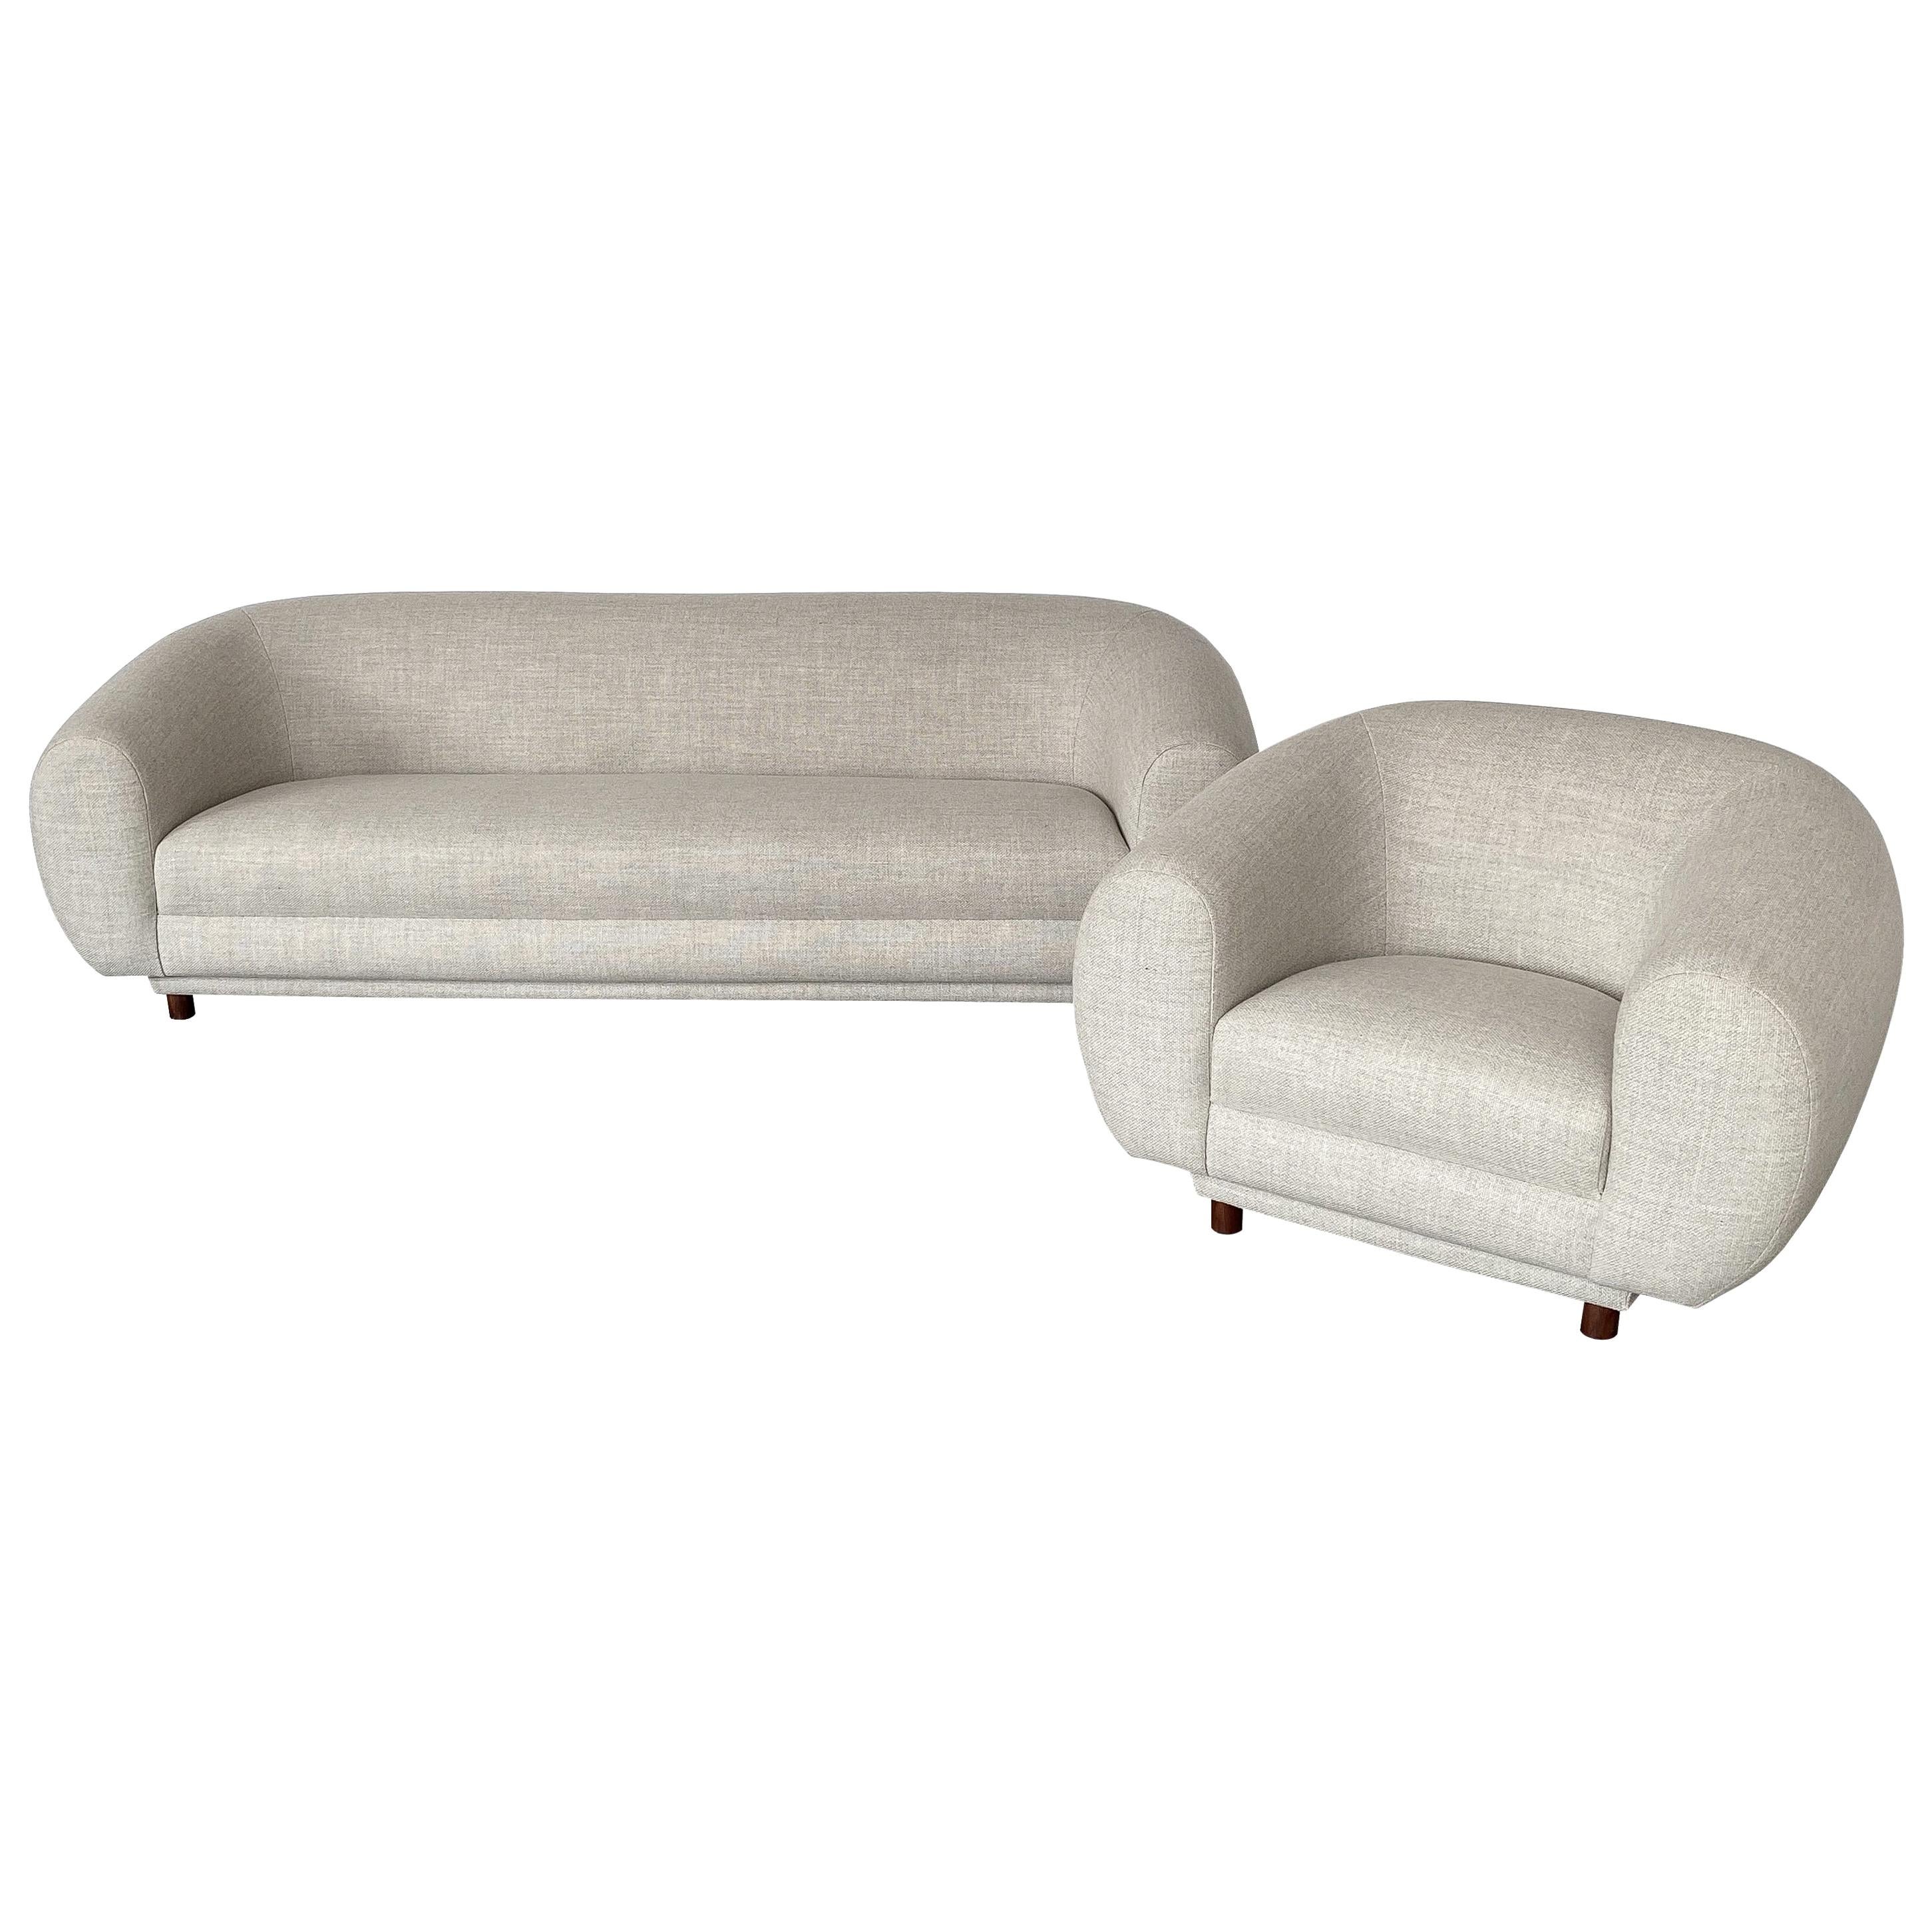 Overstuffed Polar Bear Style Sofa and Chair Set